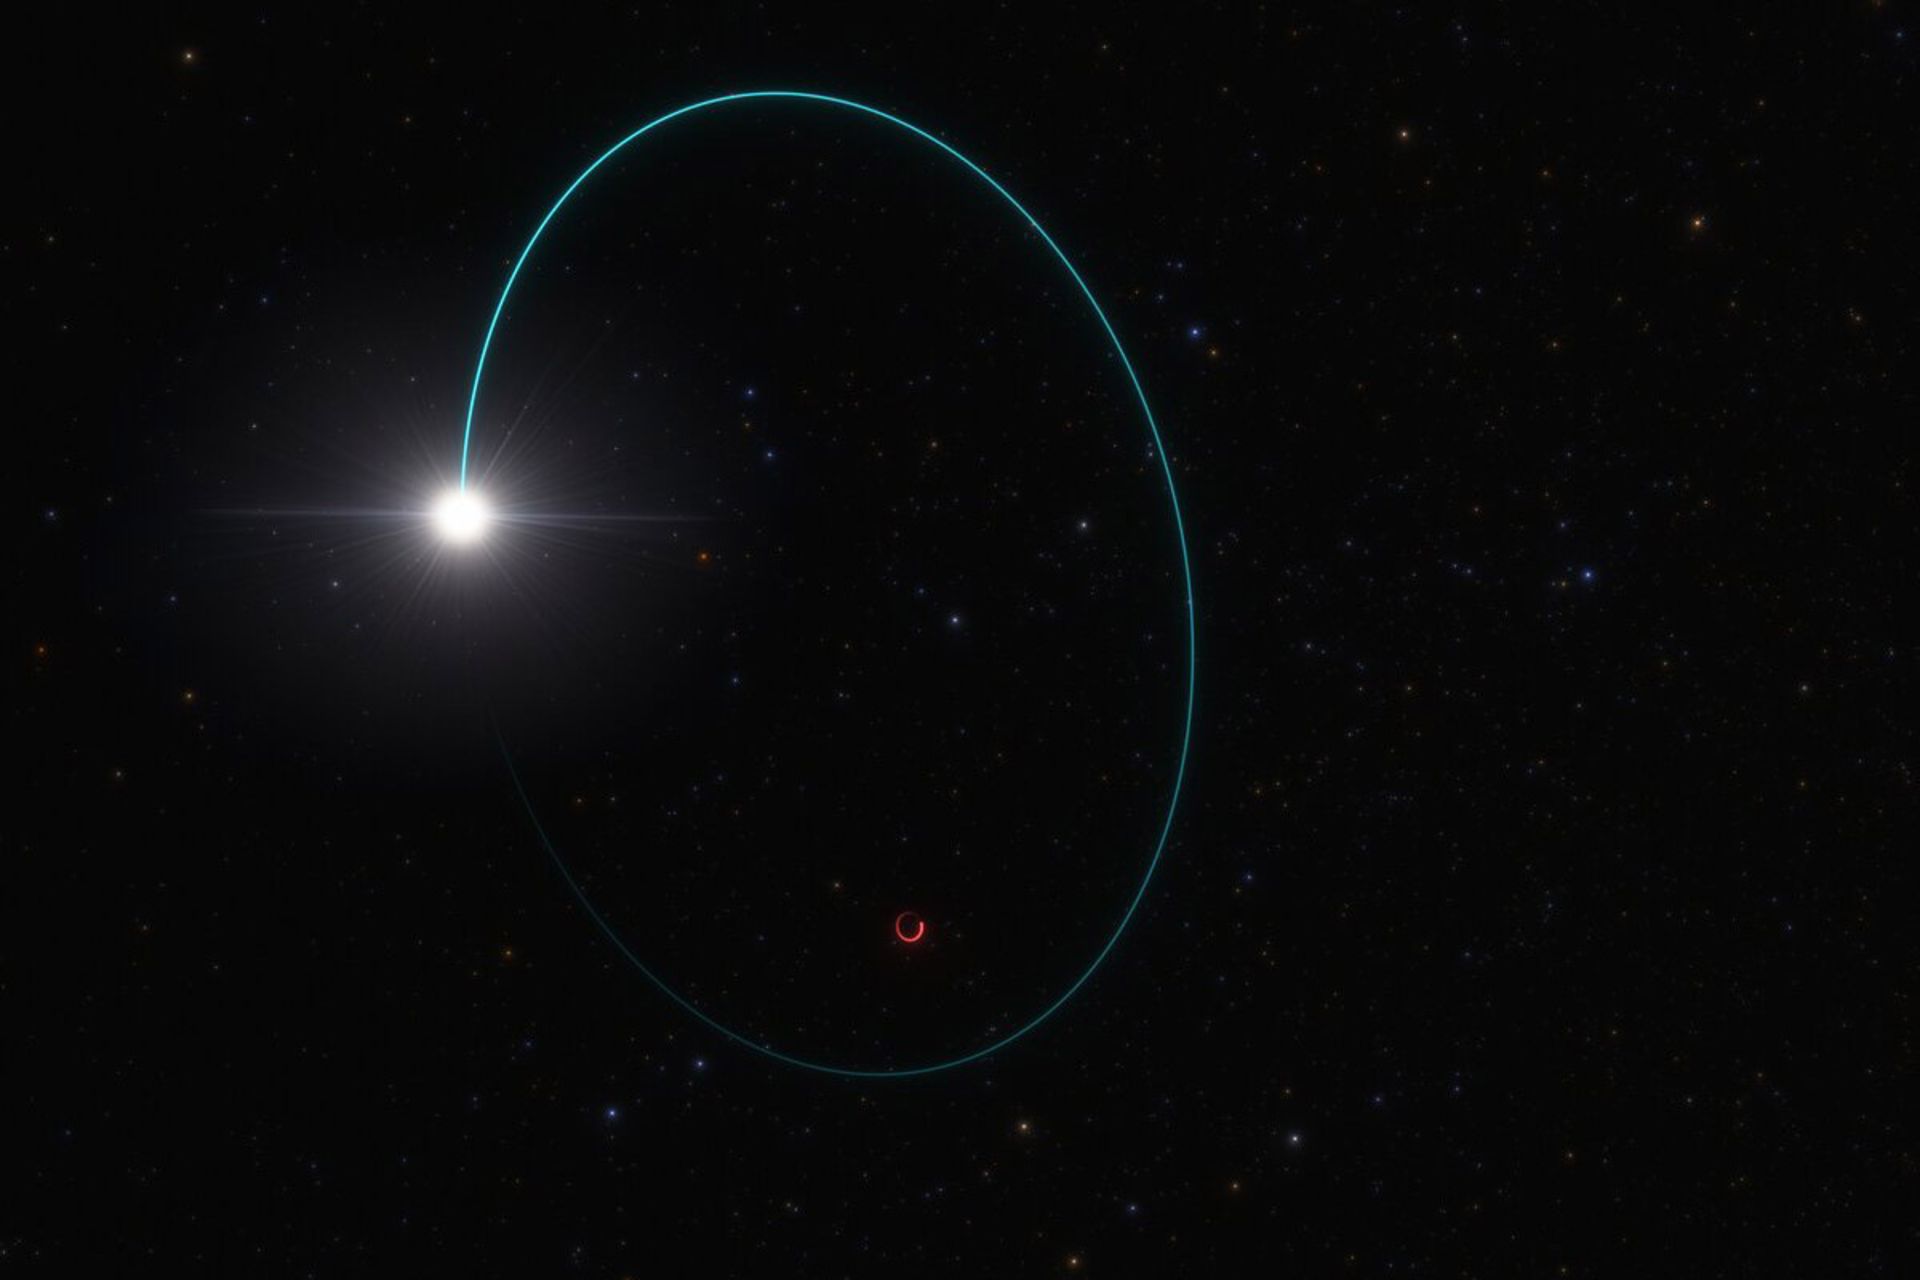 تصویرسازی Gaia bh3 و ستاره همراهش